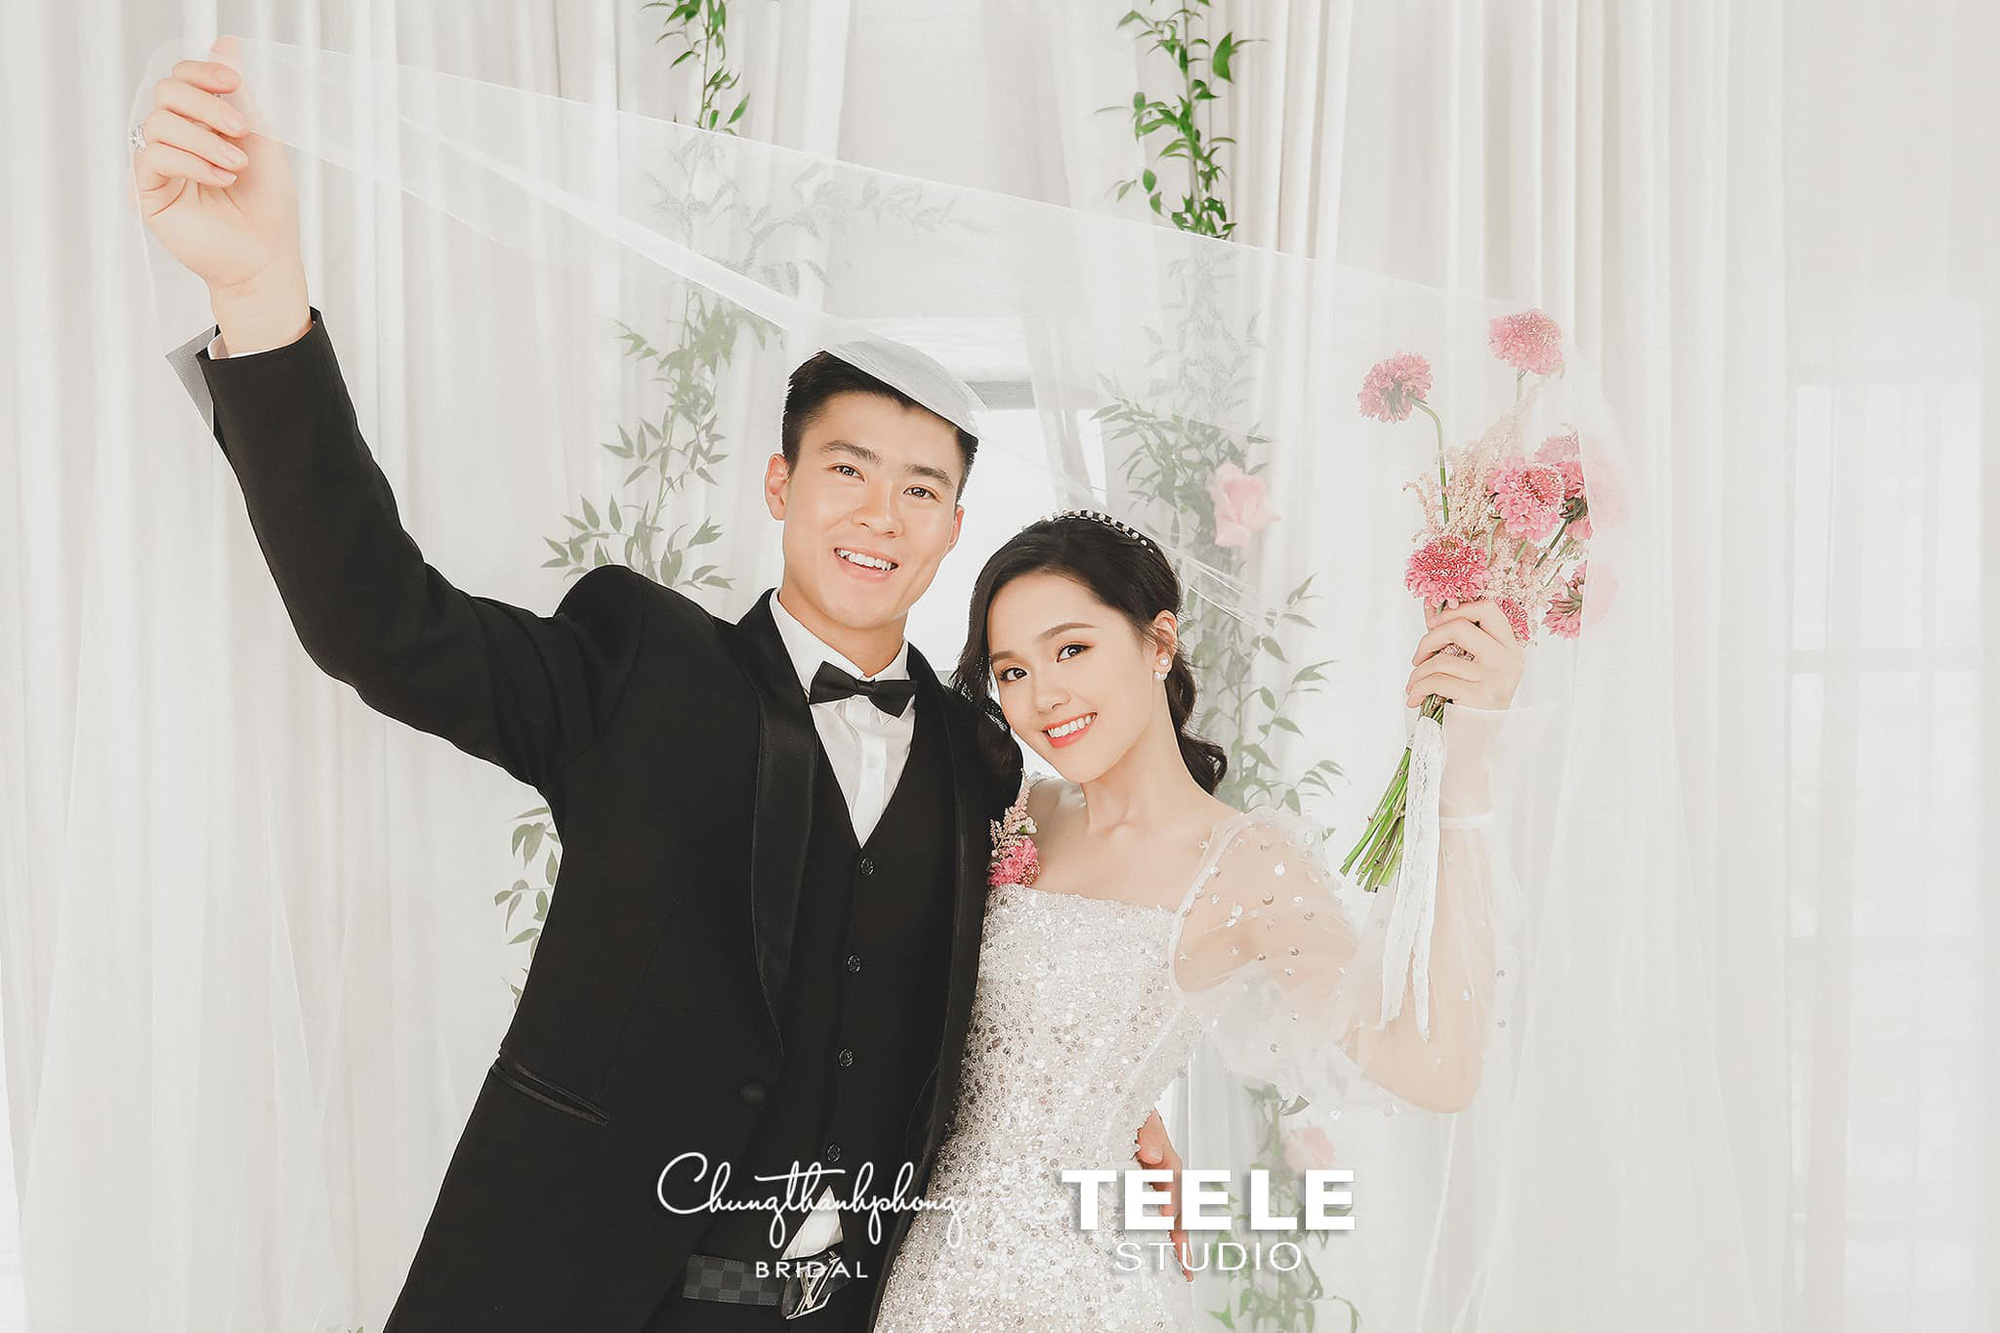 Lộ hậu trường chụp ảnh cưới của Duy Mạnh và Quỳnh Anh: Cô dâu thẹn thùng khi chú rể hôn lên mái tóc - Ảnh 3.